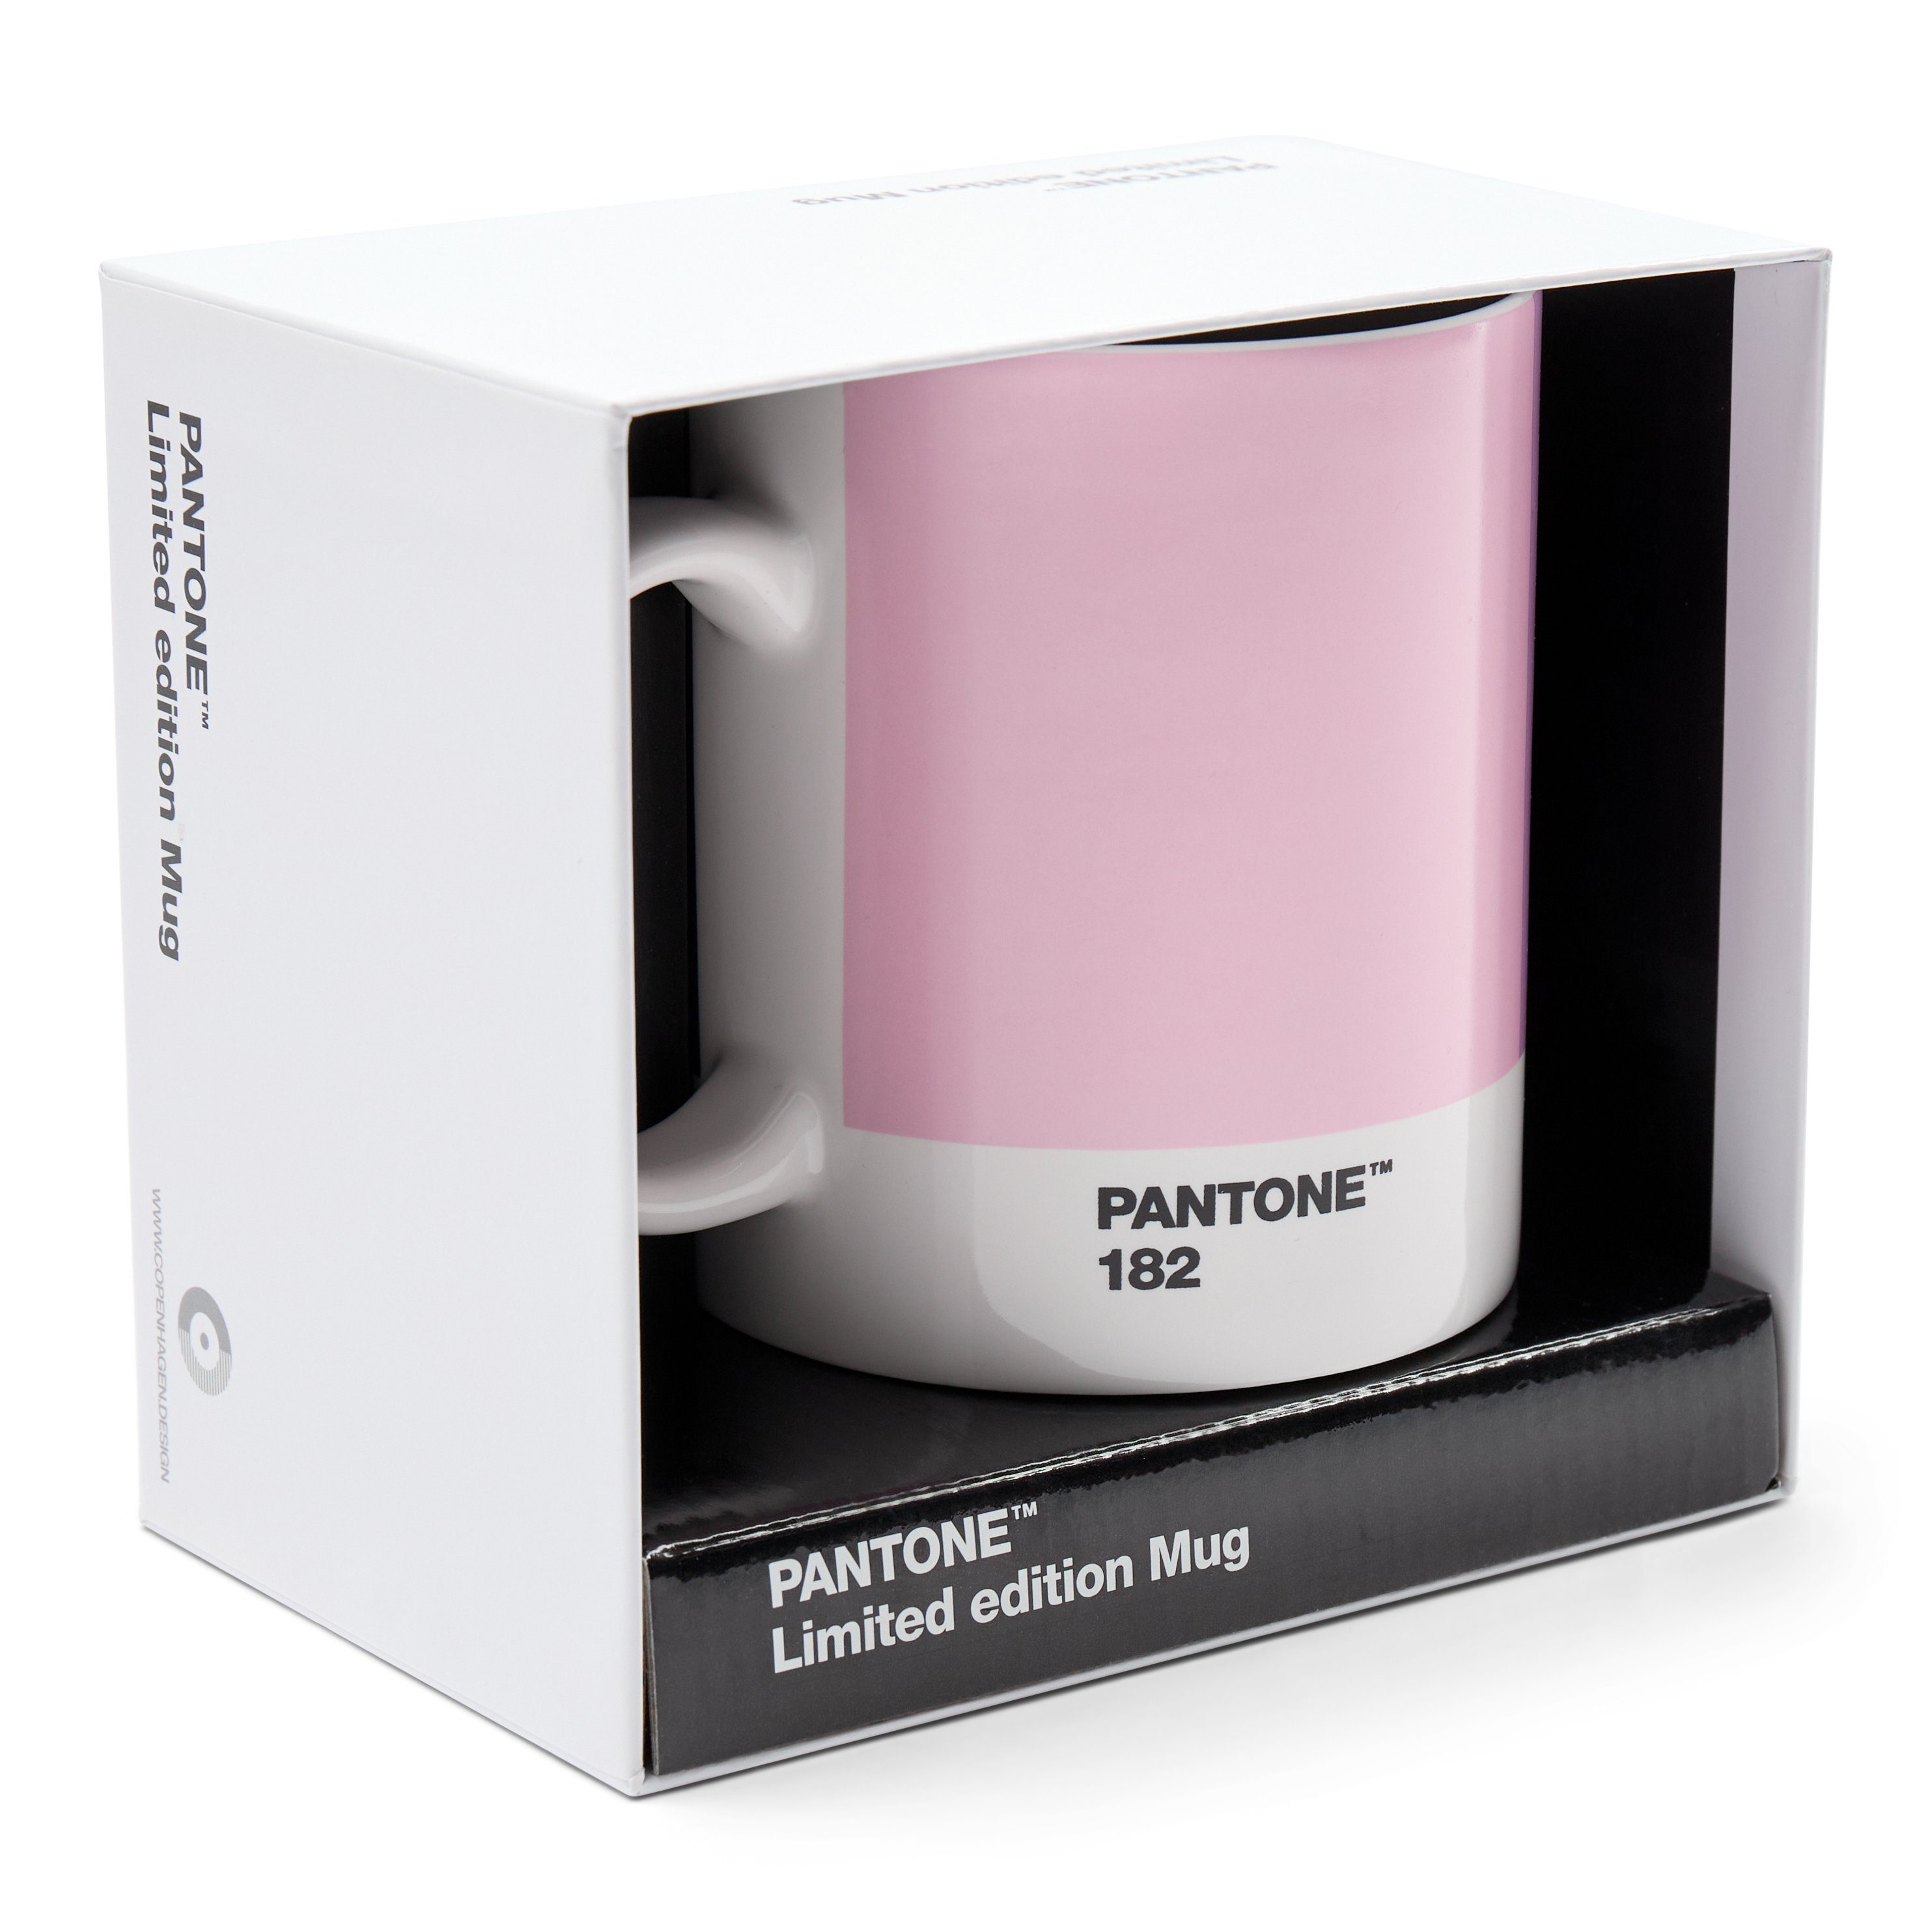 Porzellan 2 No. Kaffeeservice, Limited Geschenkbox, PANTONE Edition Kaffeebecher, 375ml,